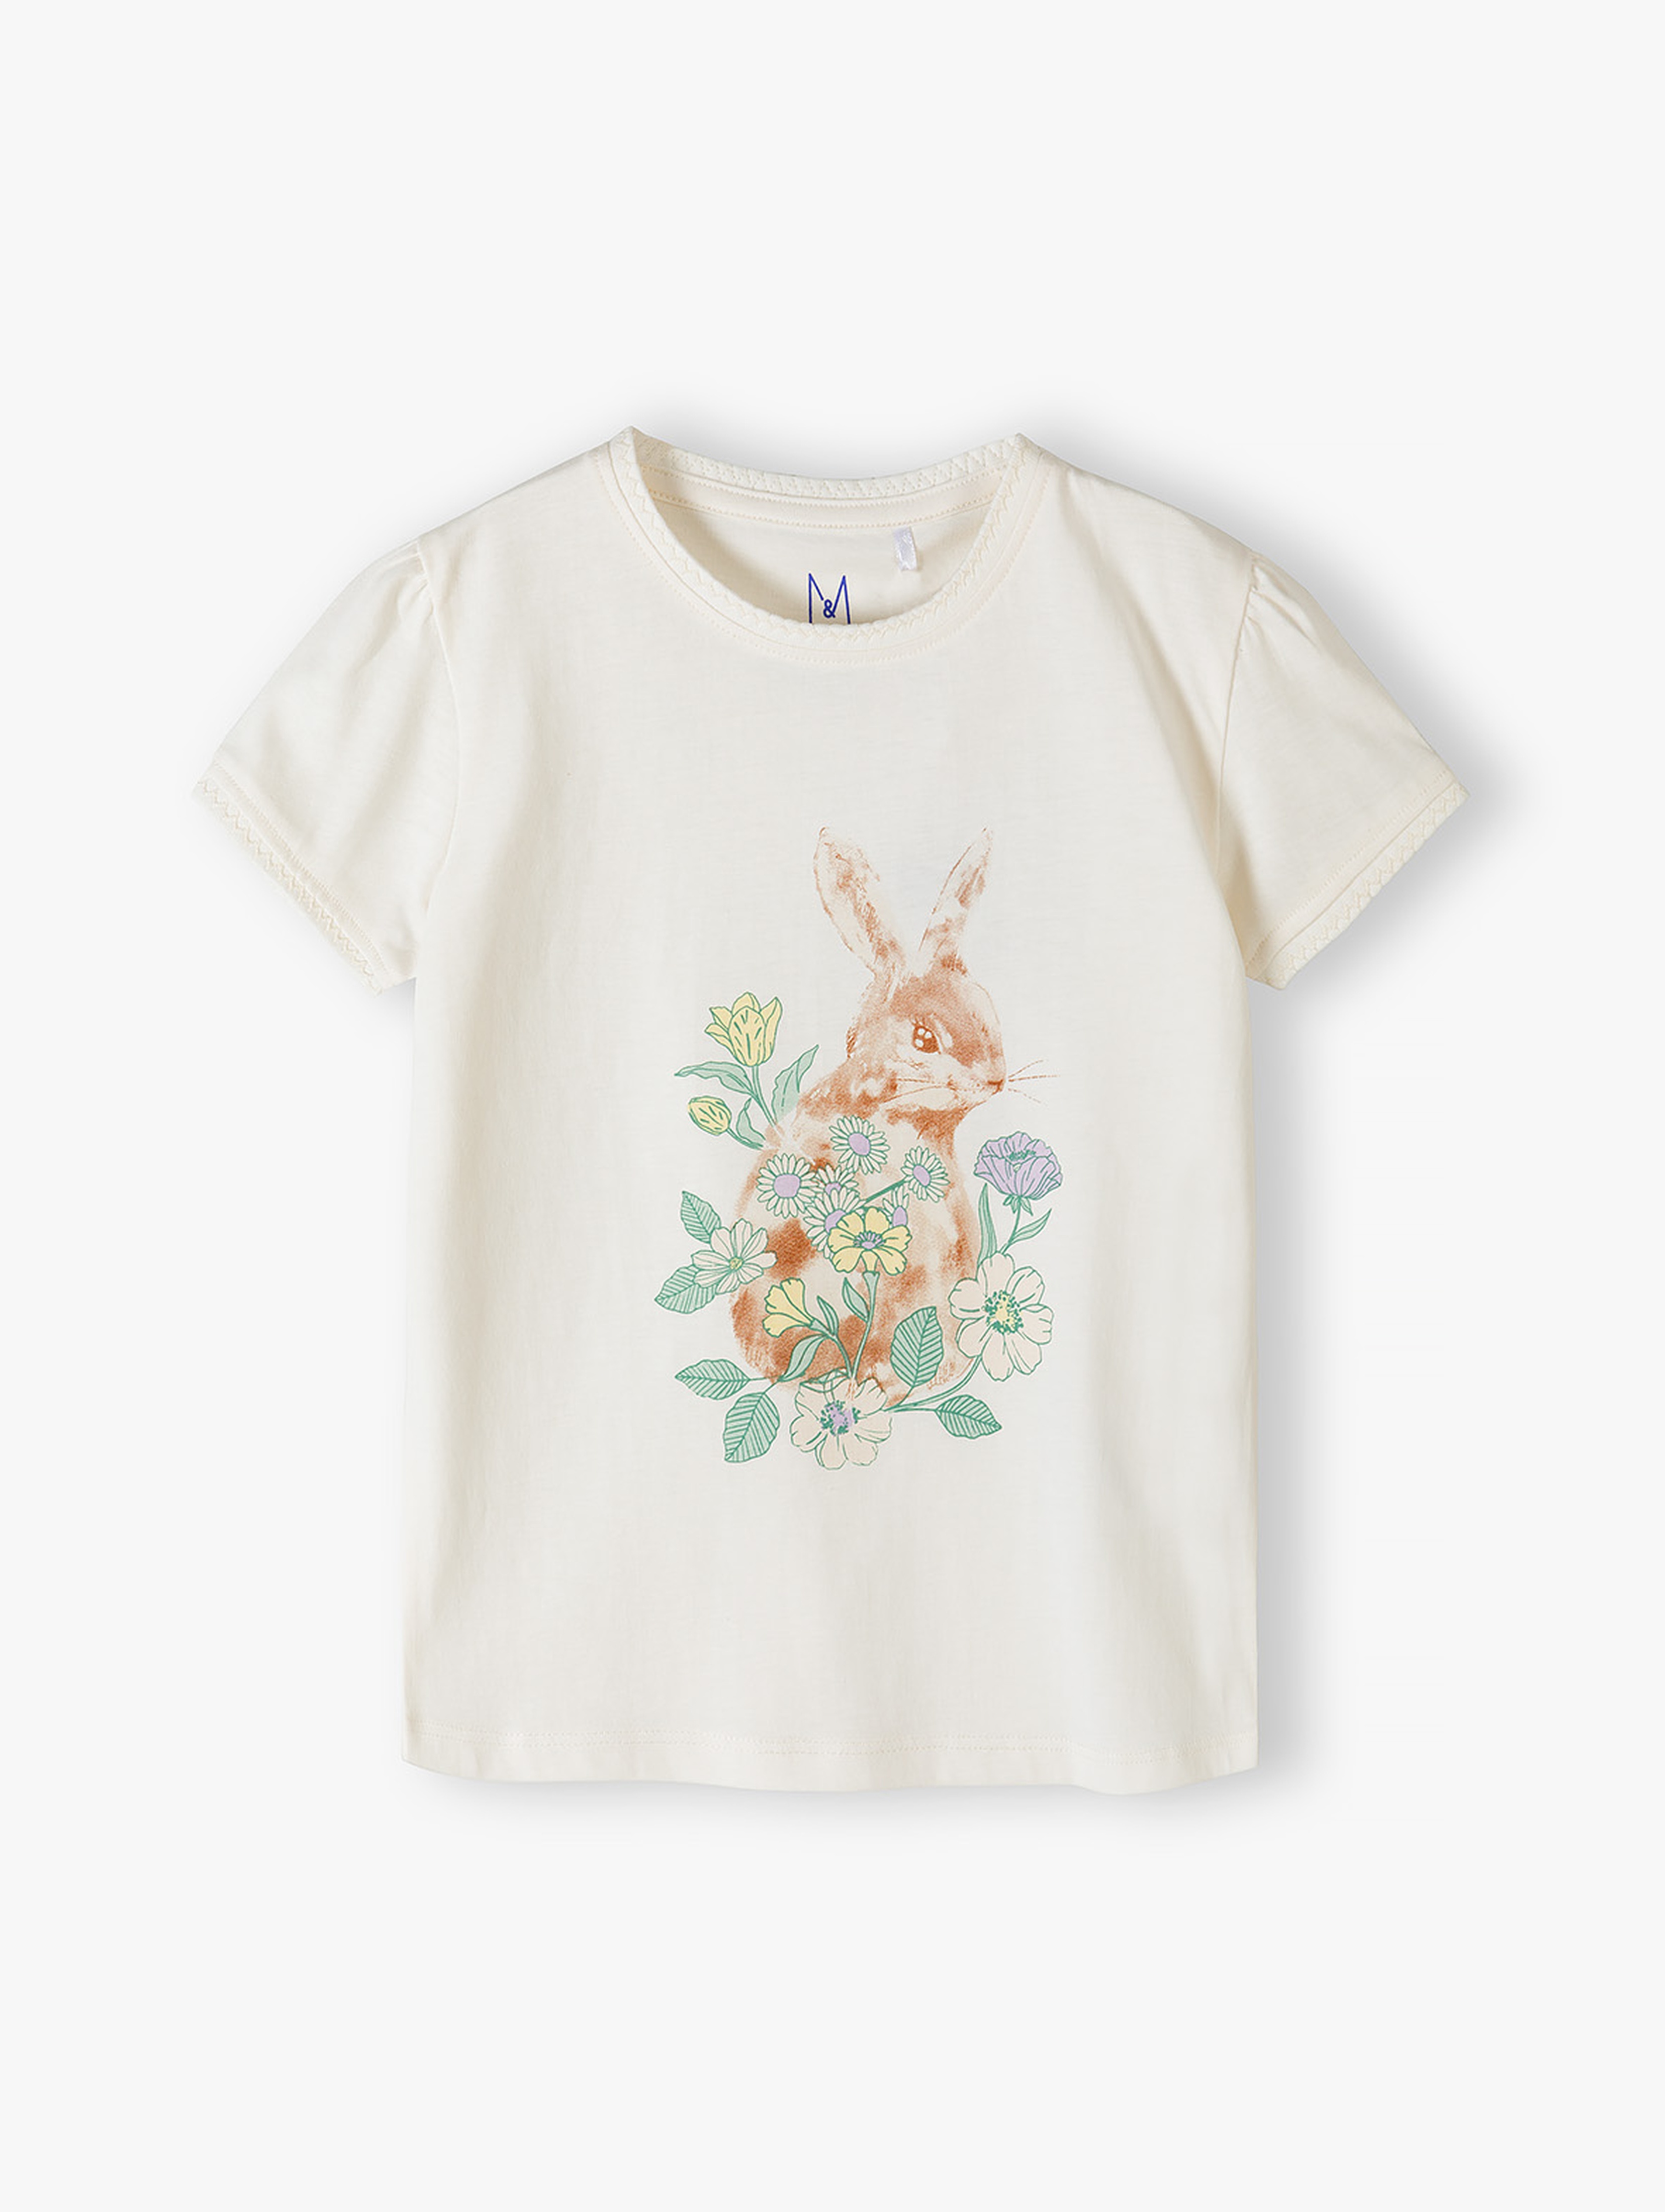 Dzianinowy t-shirt z króliczkiem - Max&Mia